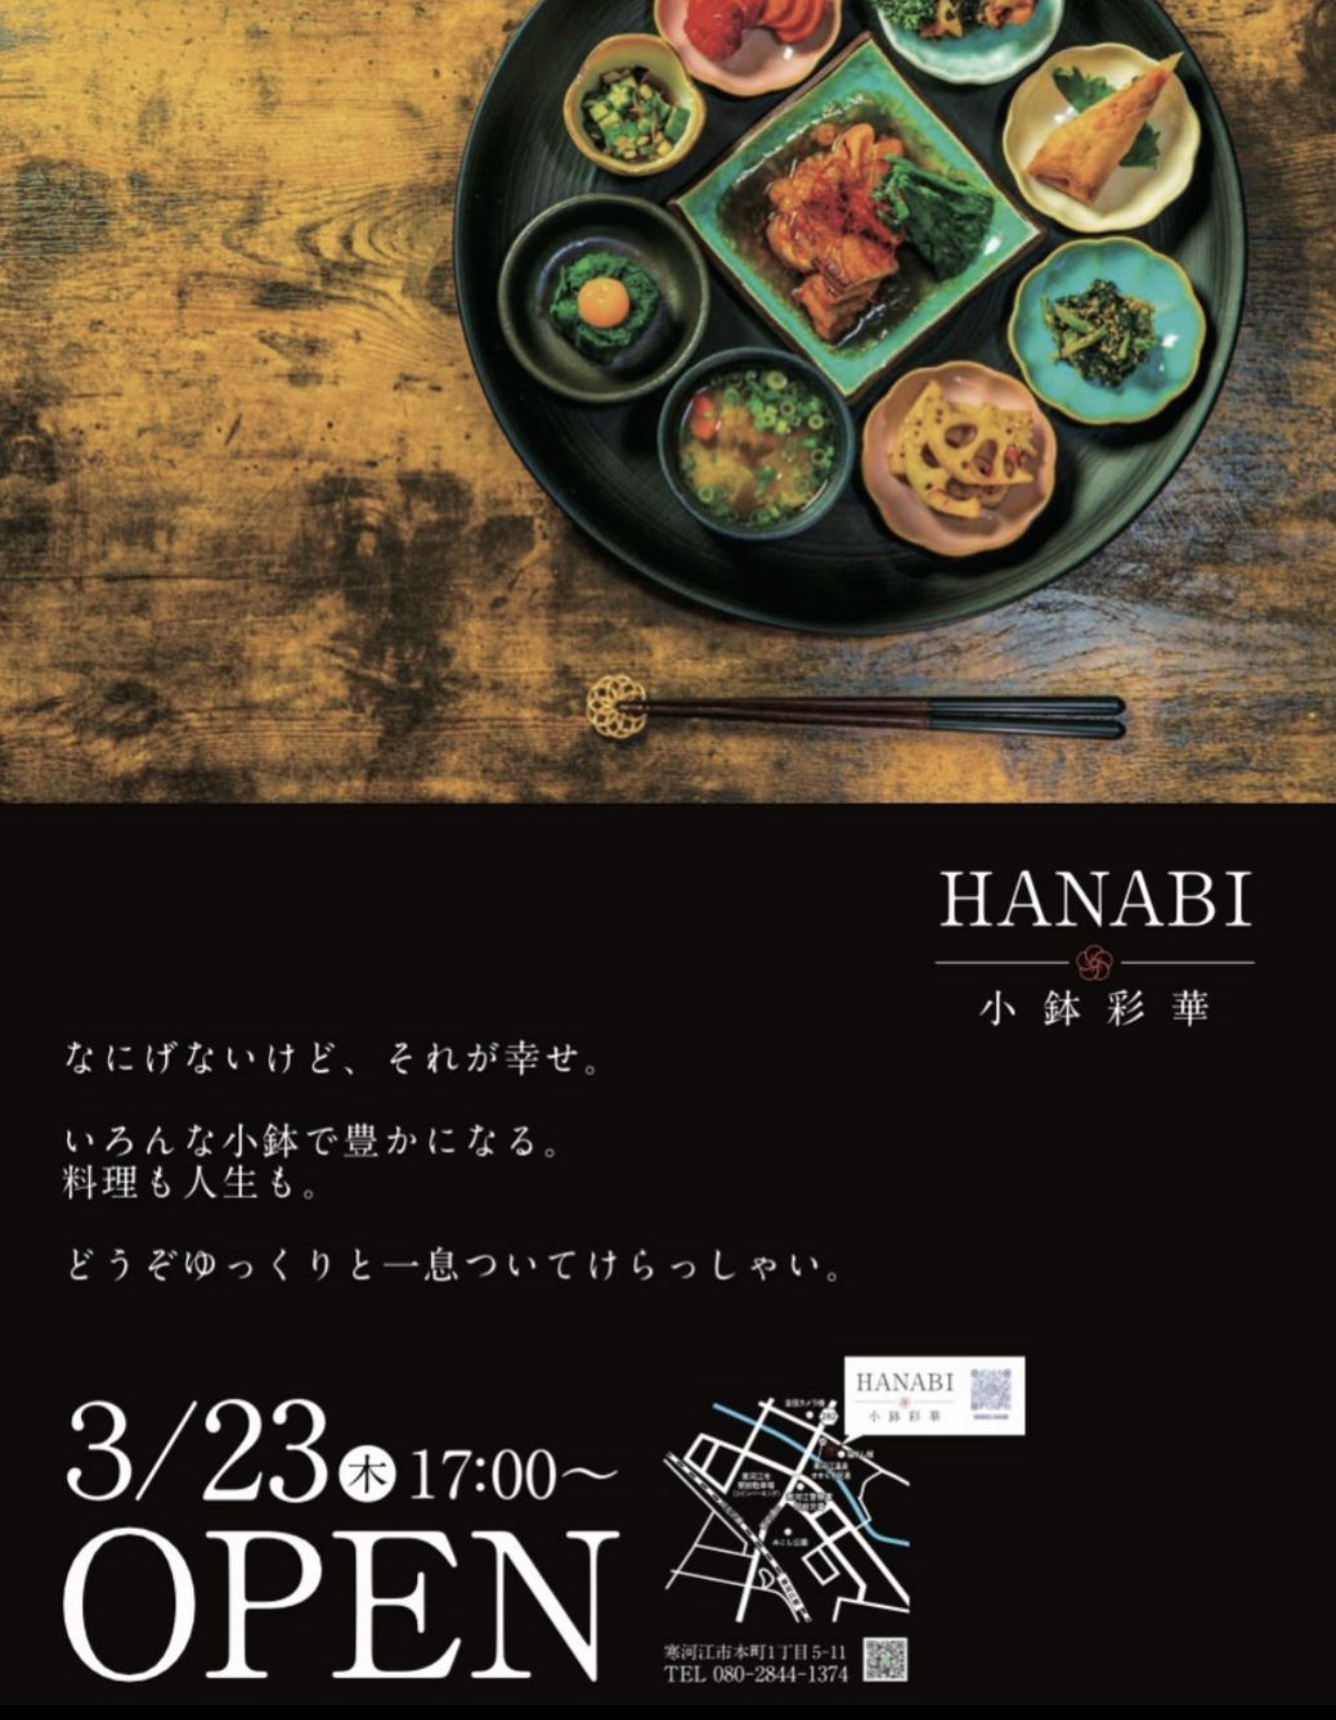 【山形開店情報3/23】寒河江市に小料理居酒屋さんがオープンしています！